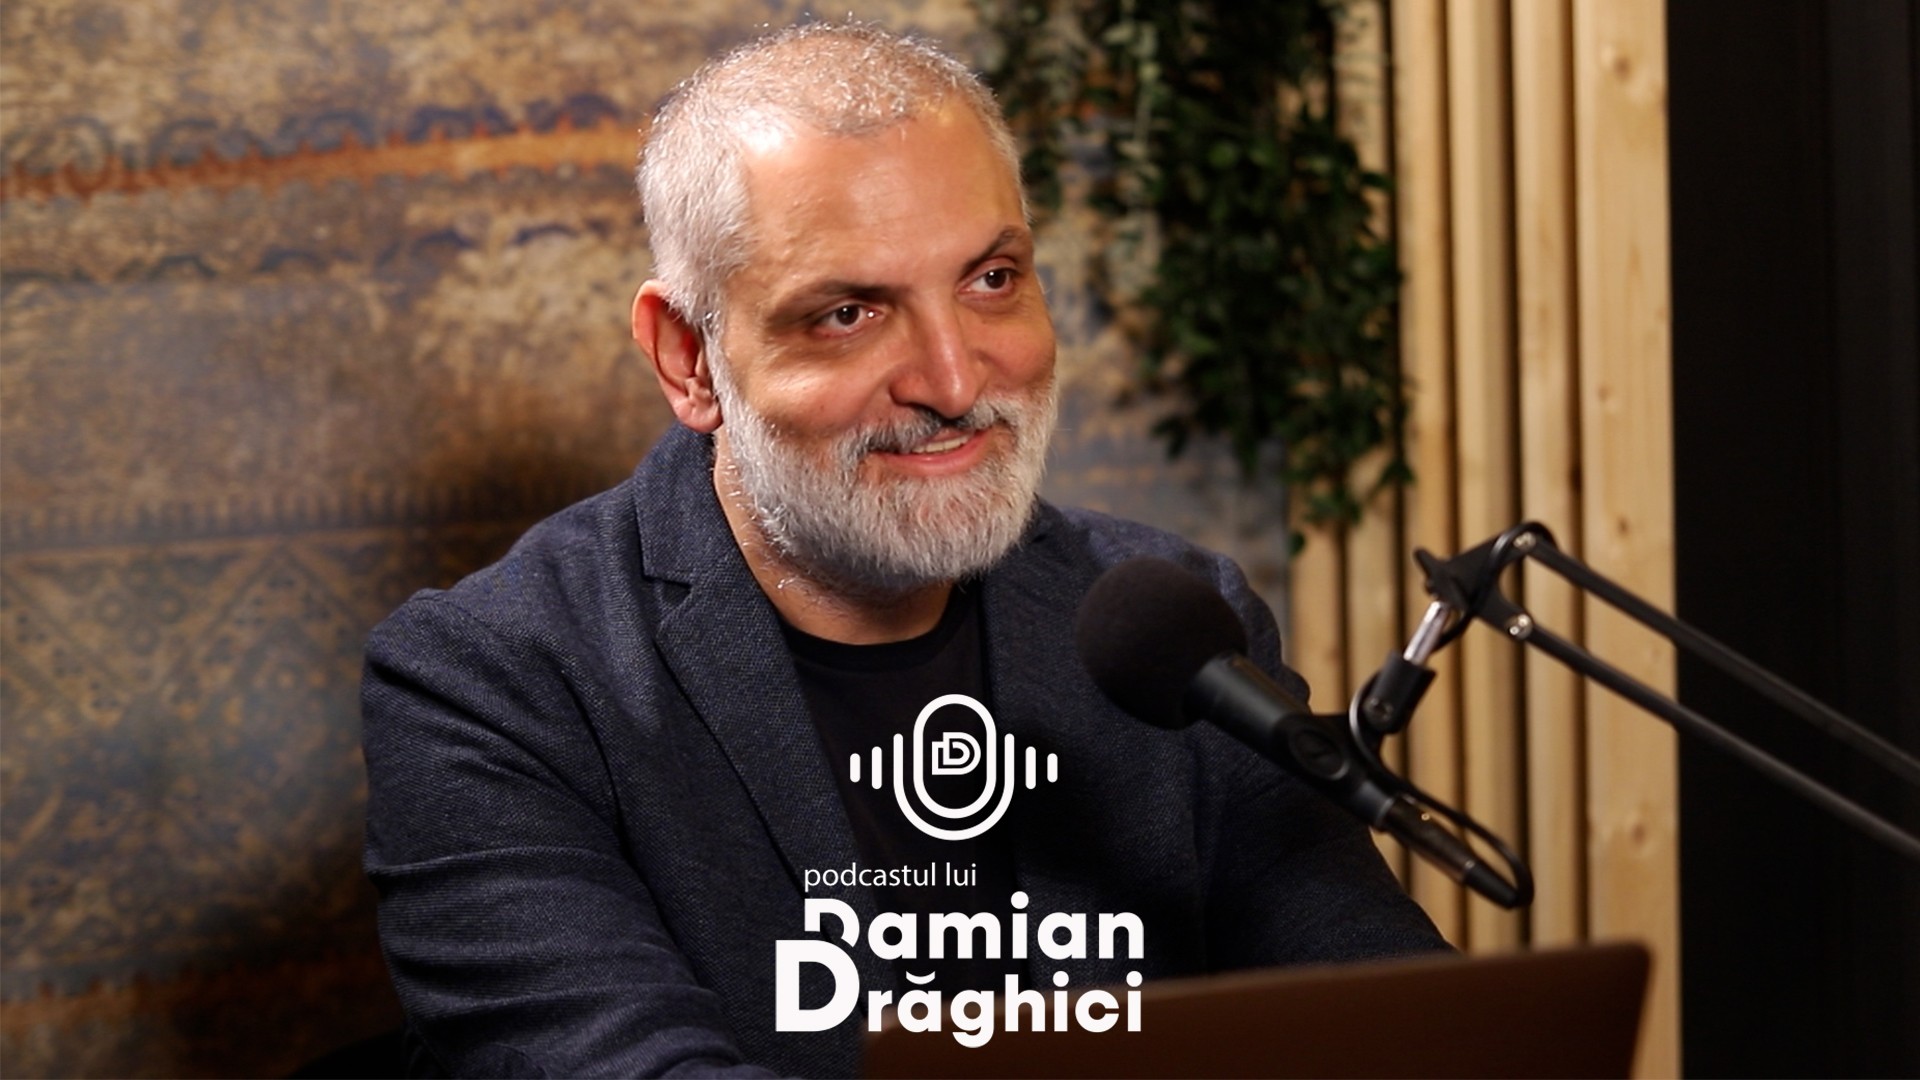 Podcastul lui Damian Drăghici